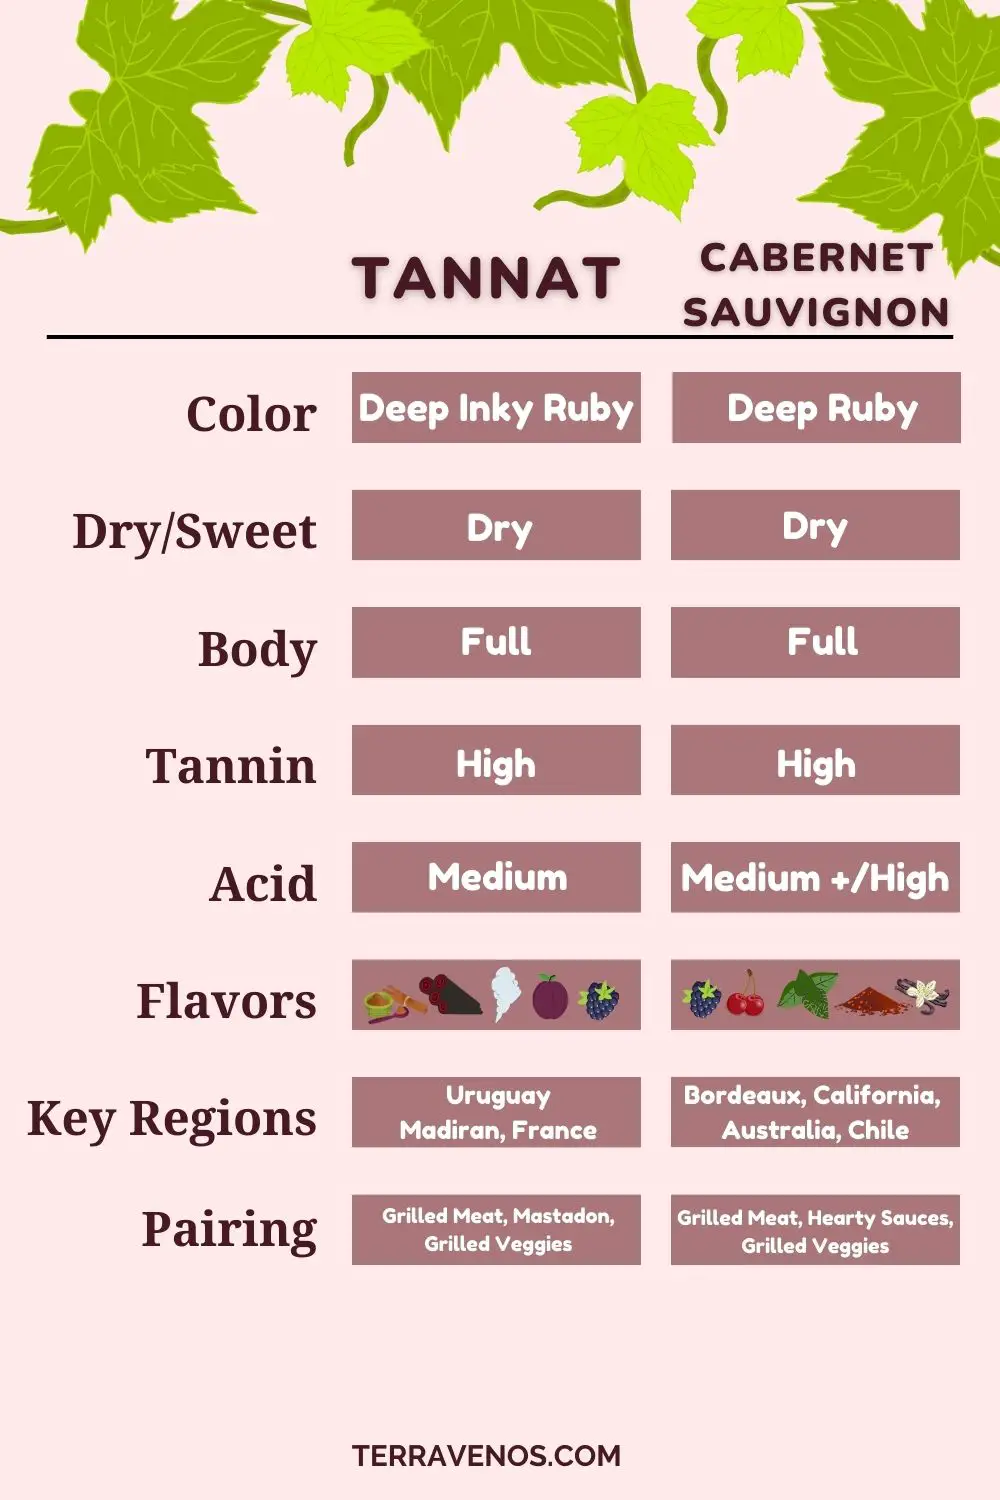 tannat-vs-cabernet-sauvignon-wine-comparison-infographic